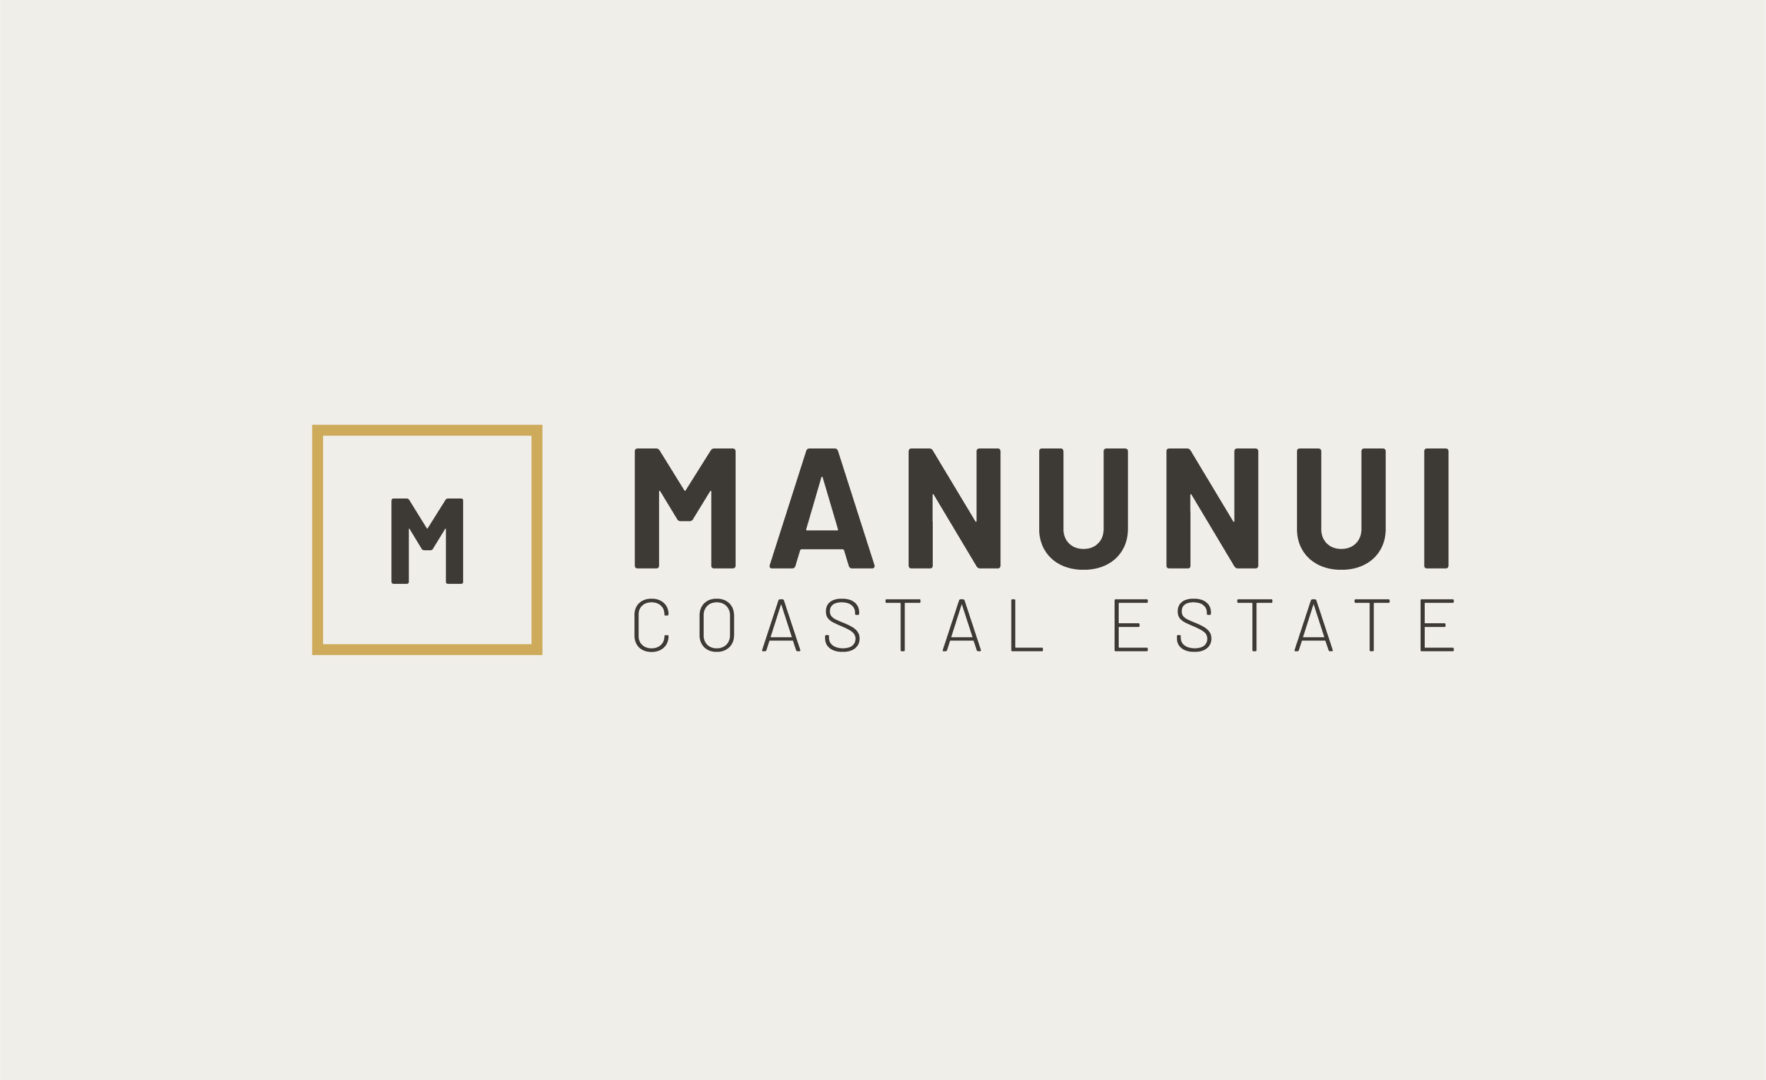 Manunui coastal estate logo